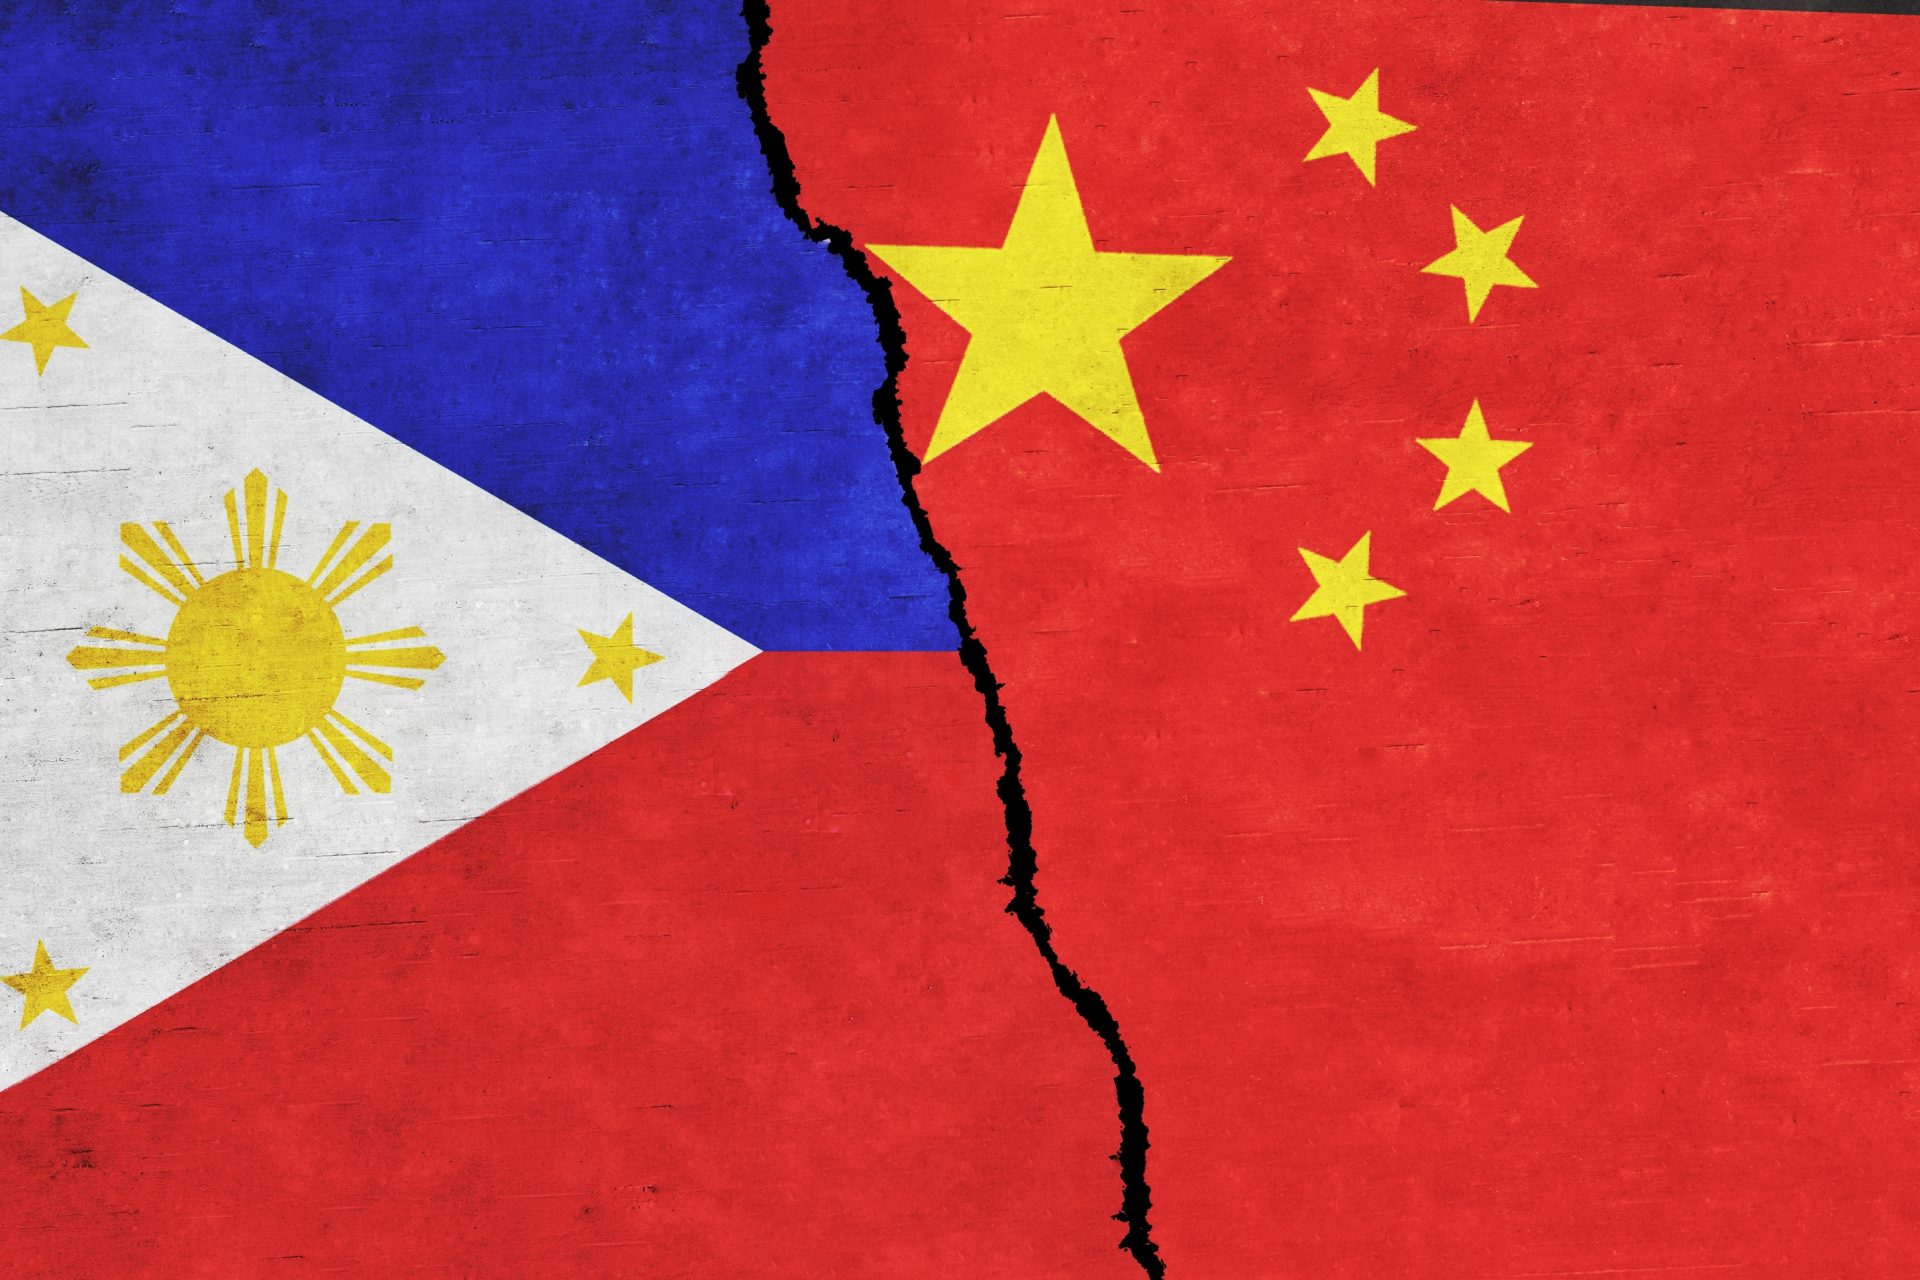 O equívoco das Filipinas na reivindicação territorial